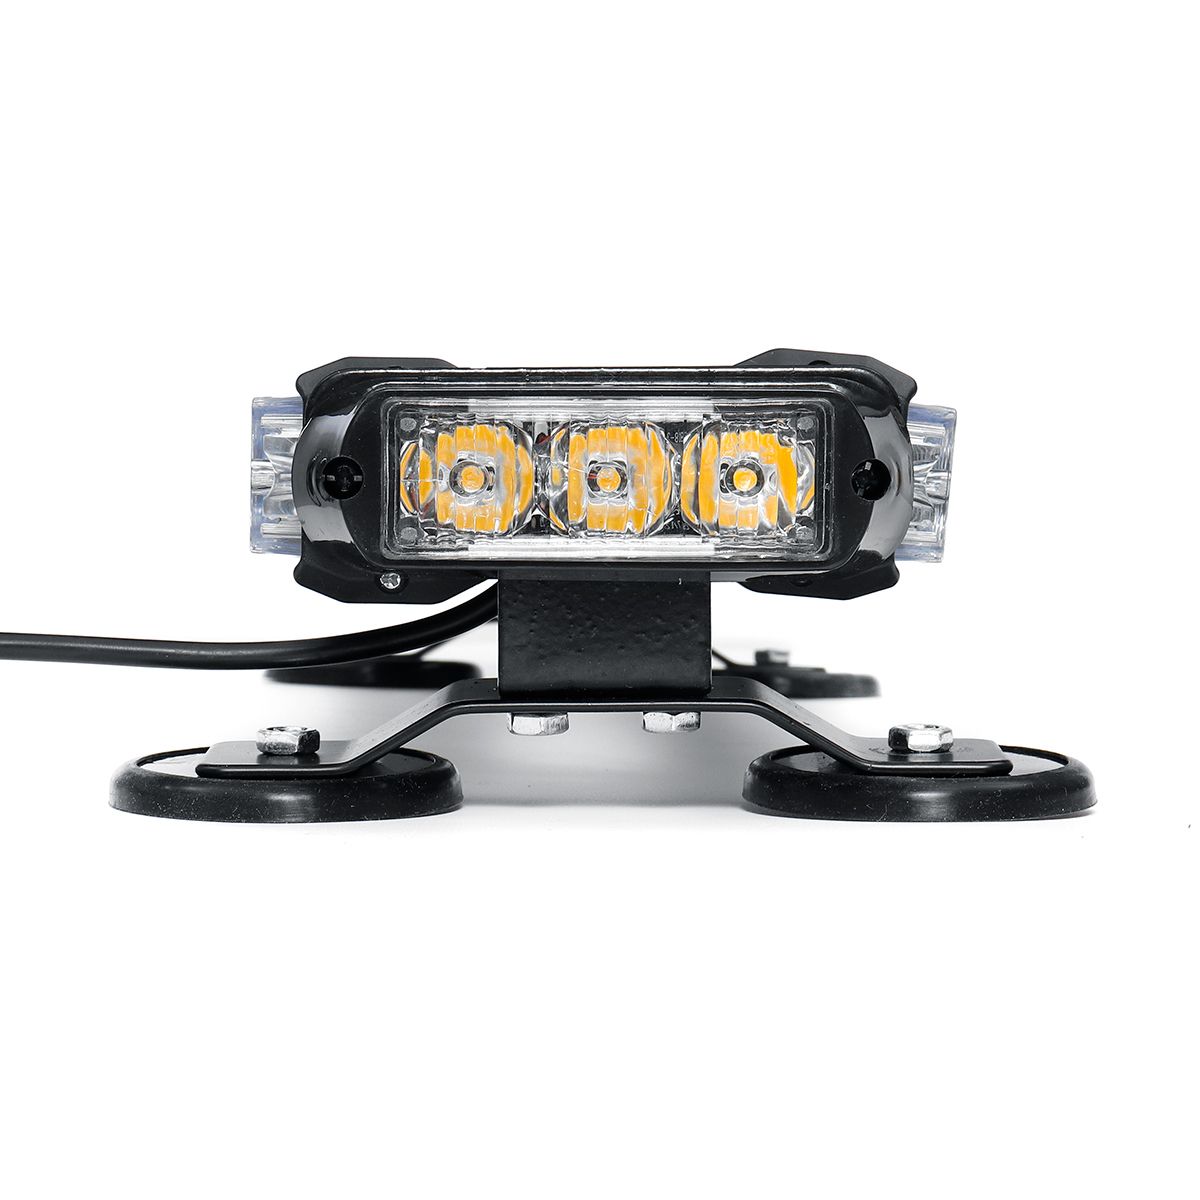 12V-144W-42-LED-Amber-Double-Side-Traffic-Advisor-Strobe-Flash-Light-Bar-Emergency-Light-Magnetic-Un-1589983